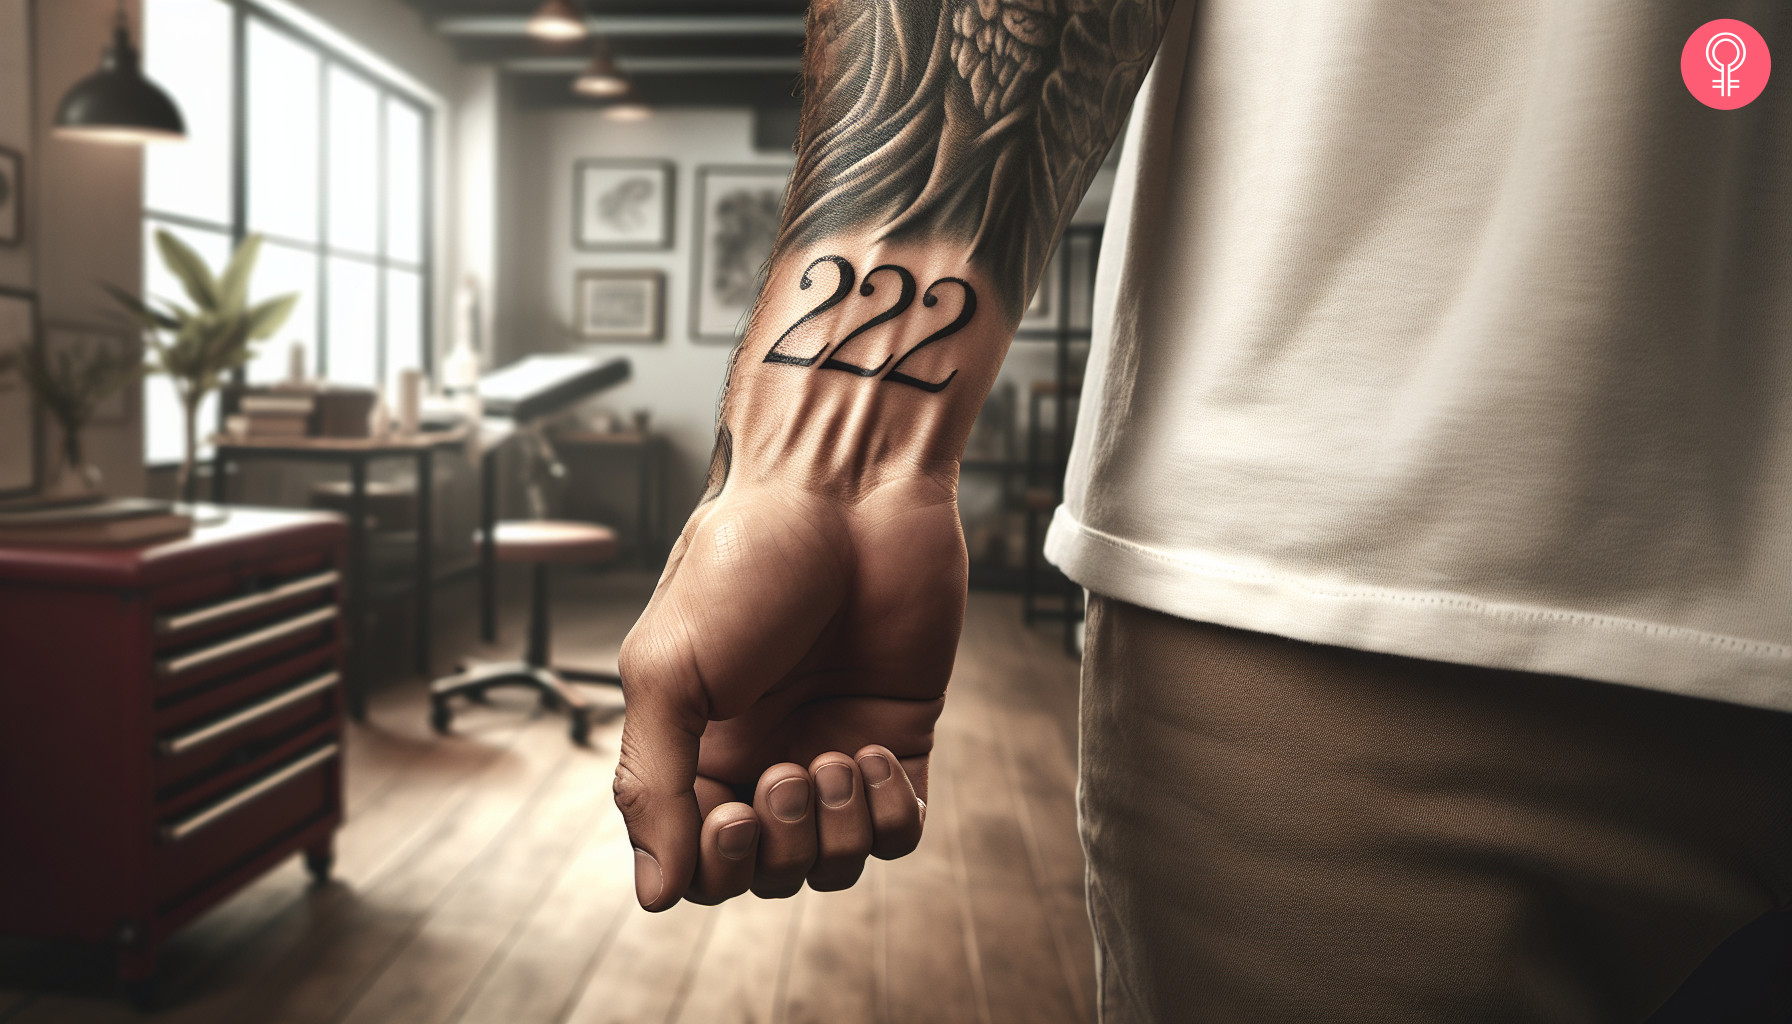 222 Engelszahl Tattoo am Handgelenk eines Mannes